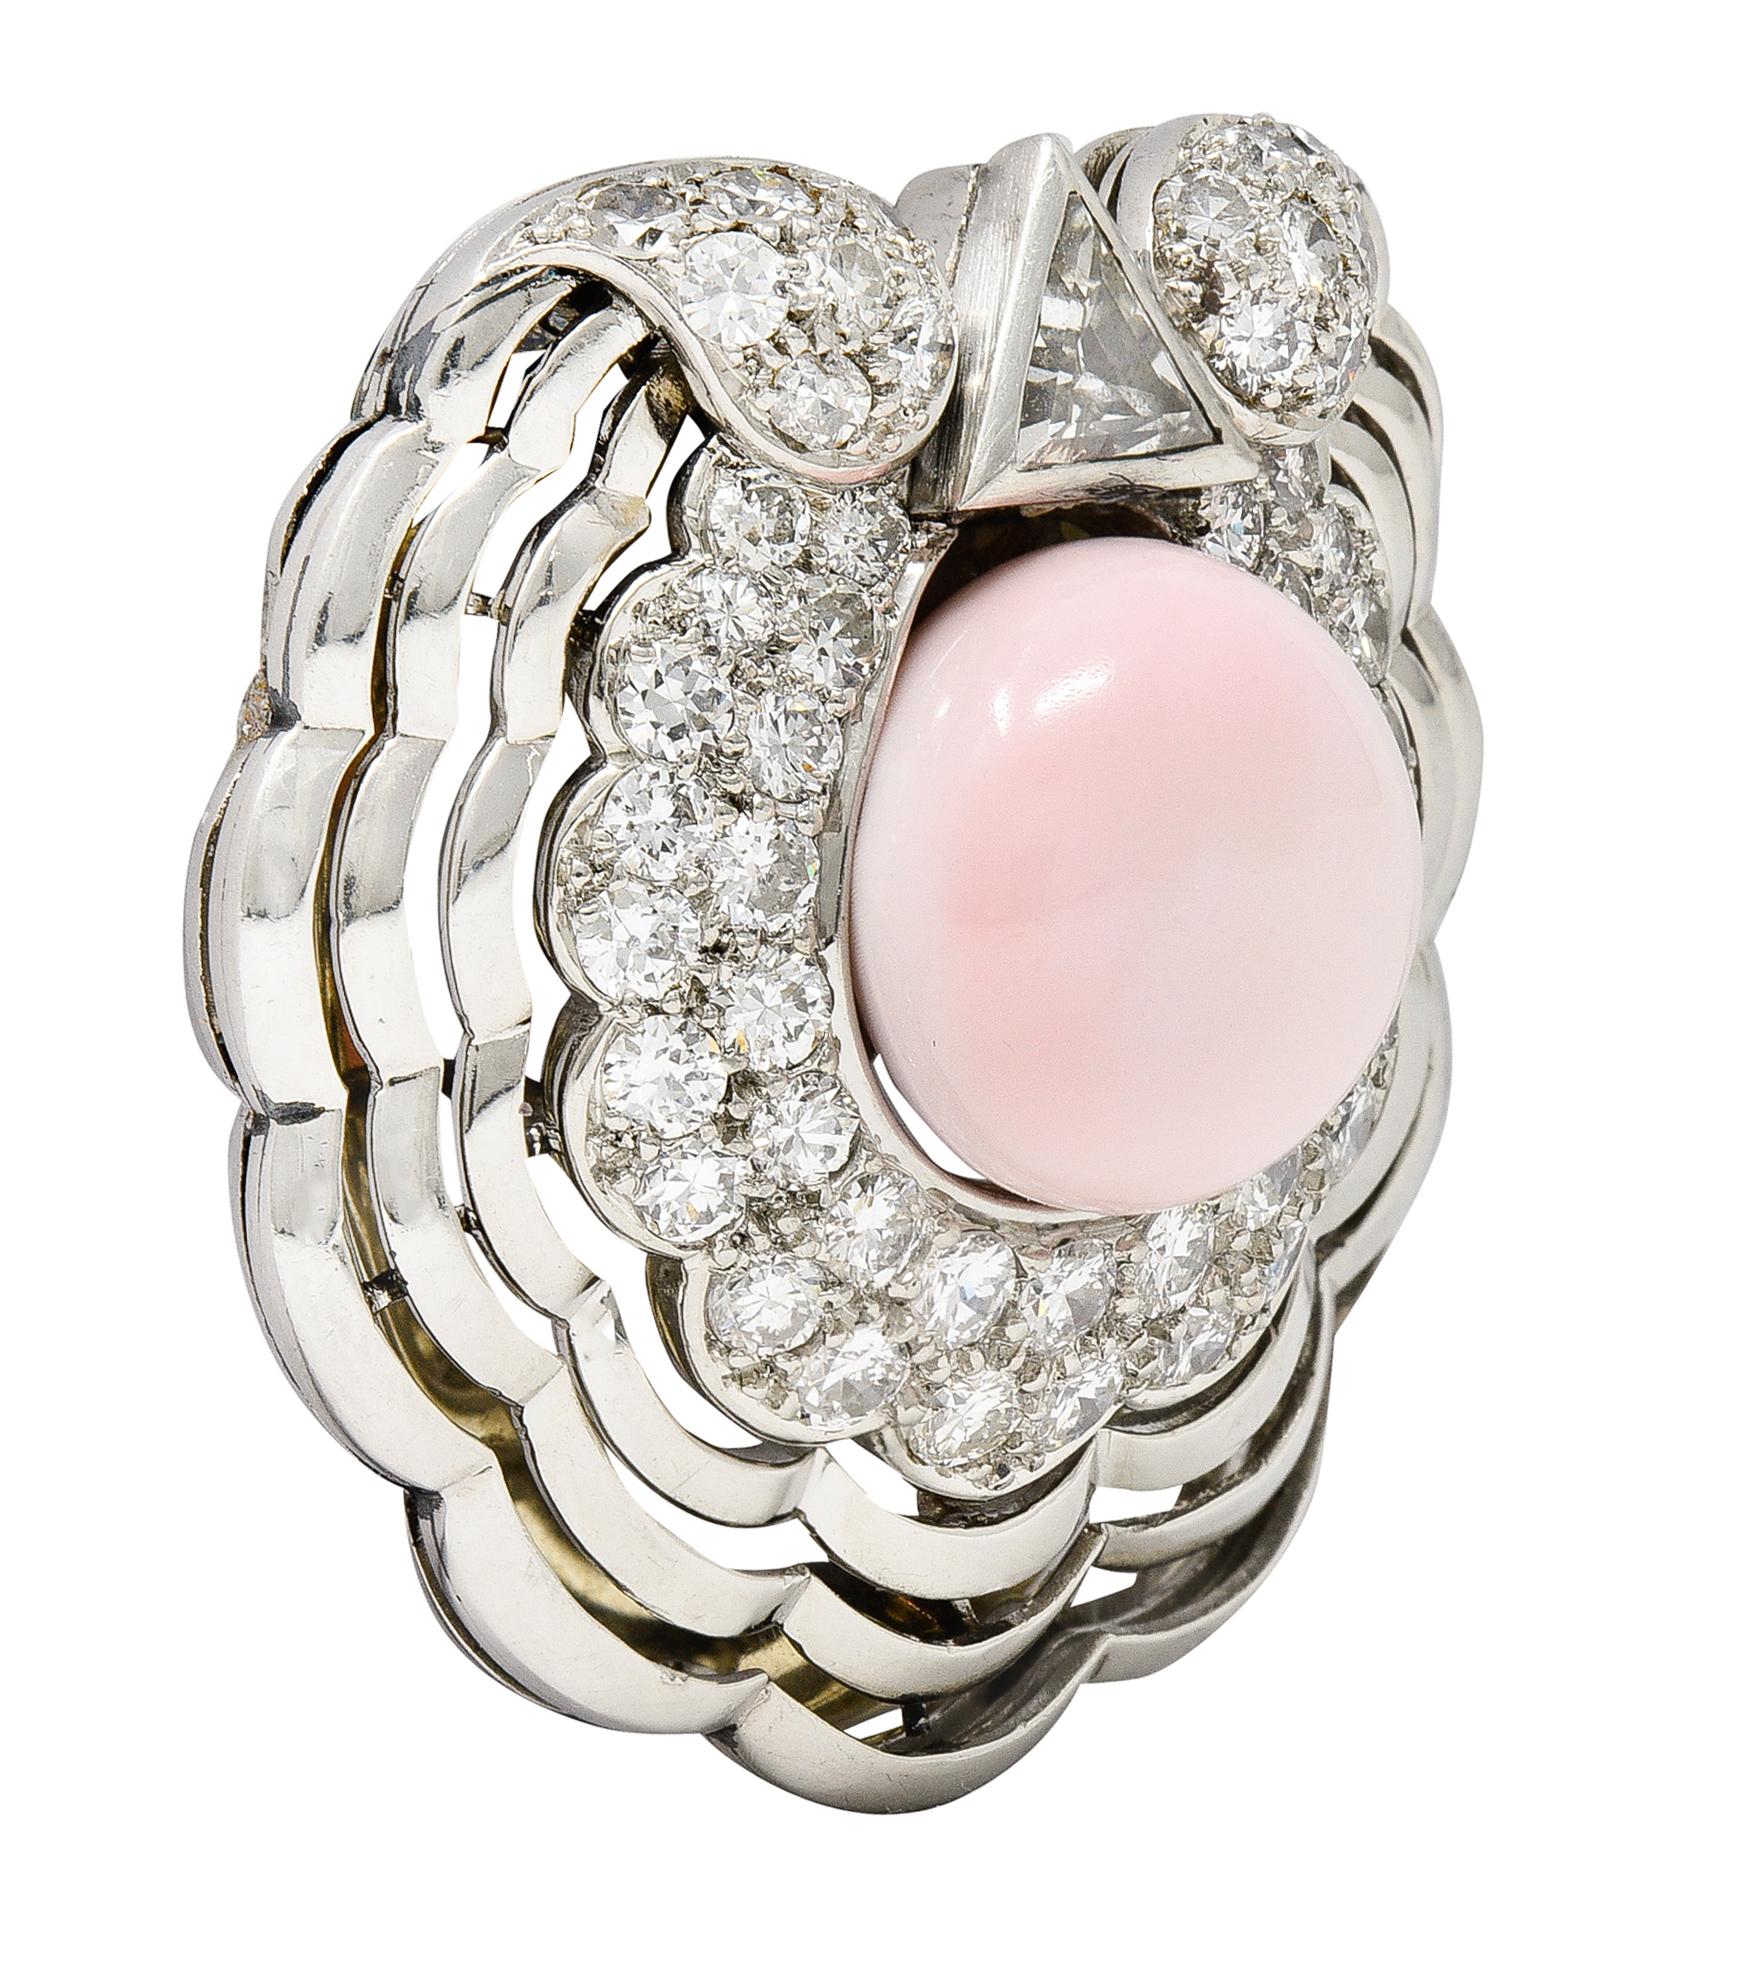 Au centre, une perle de conque presque ronde de 12,5 x 12,2 mm - de couleur rose pâle opaque. D'origine saline naturelle - avec un entourage de motifs de coquillages percés en éventail. Il s'agit d'un entourage de diamants de taille européenne